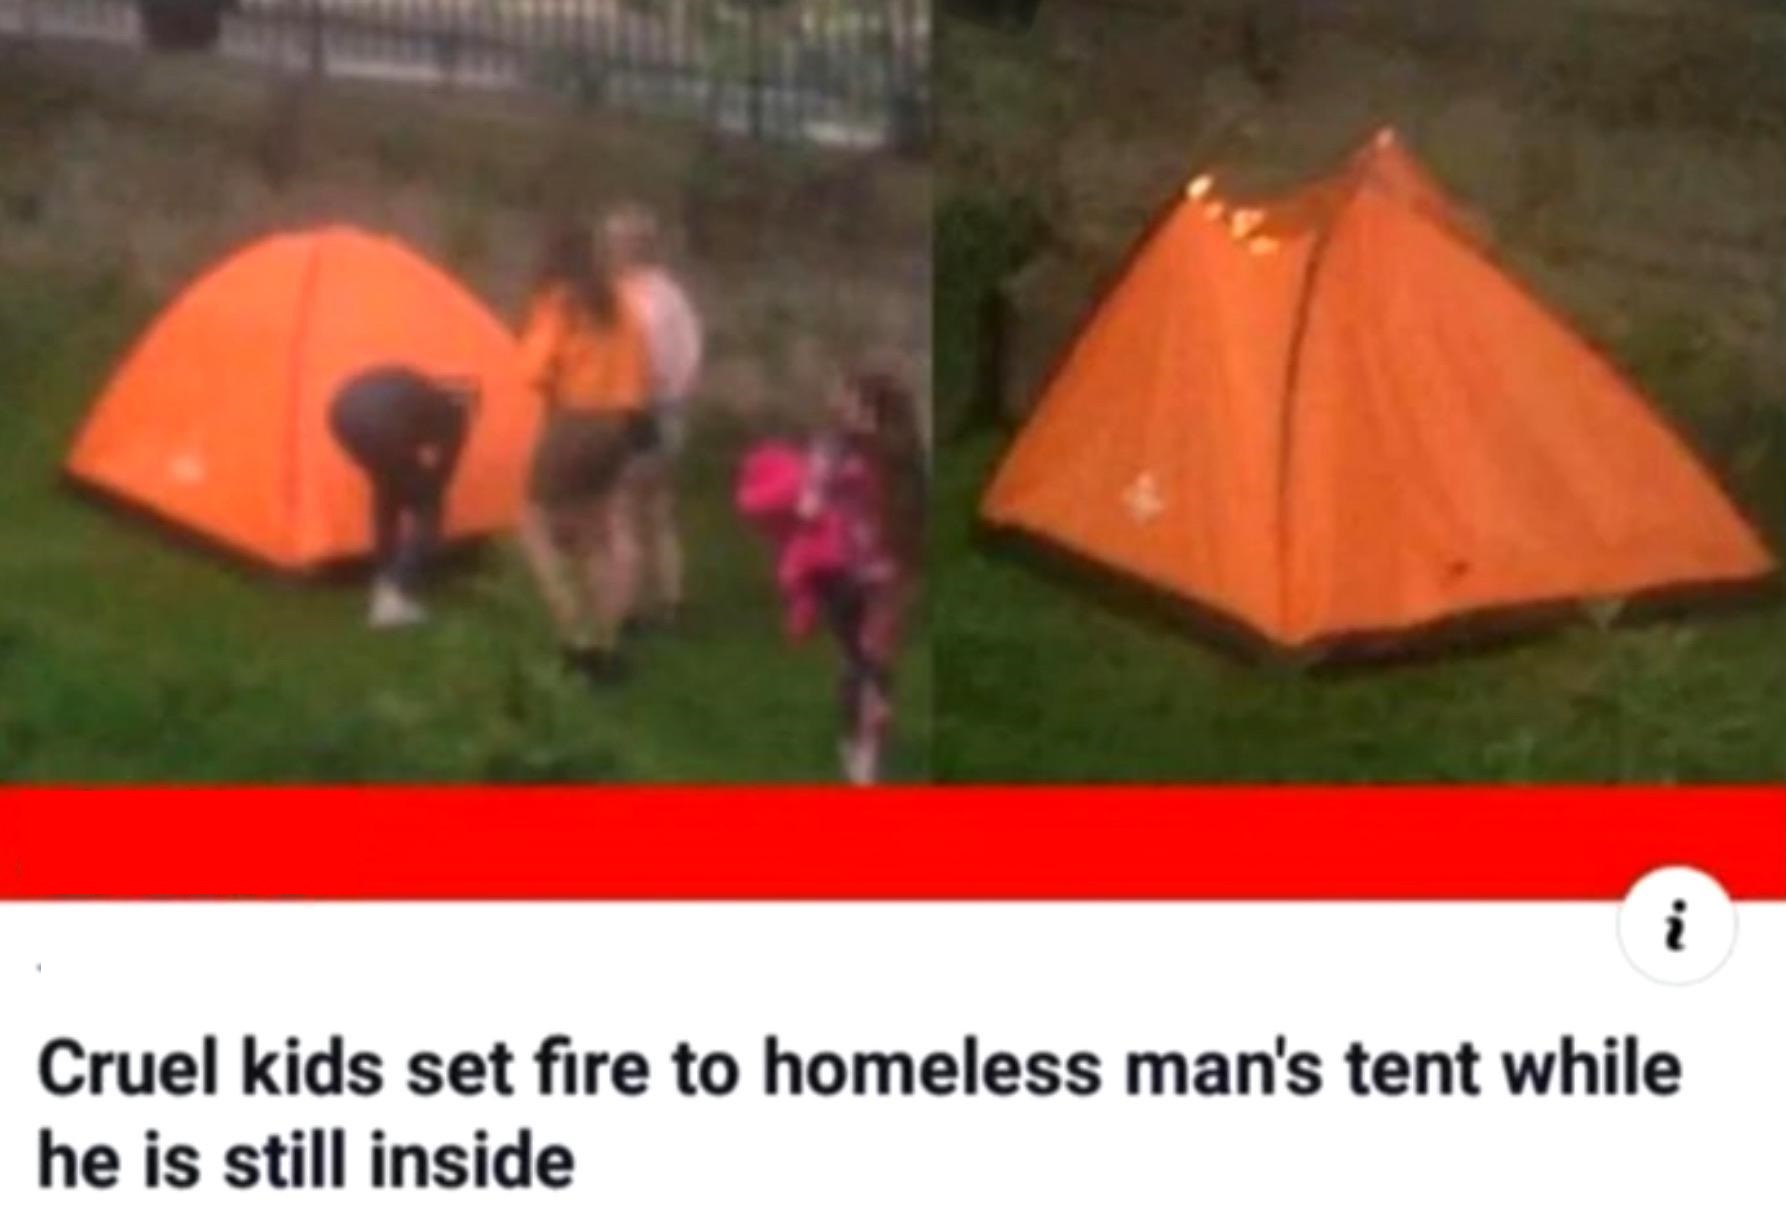 cruel kids set fire to homeless man's tent - Cruel kids set fire to homeless man's tent while he is still inside